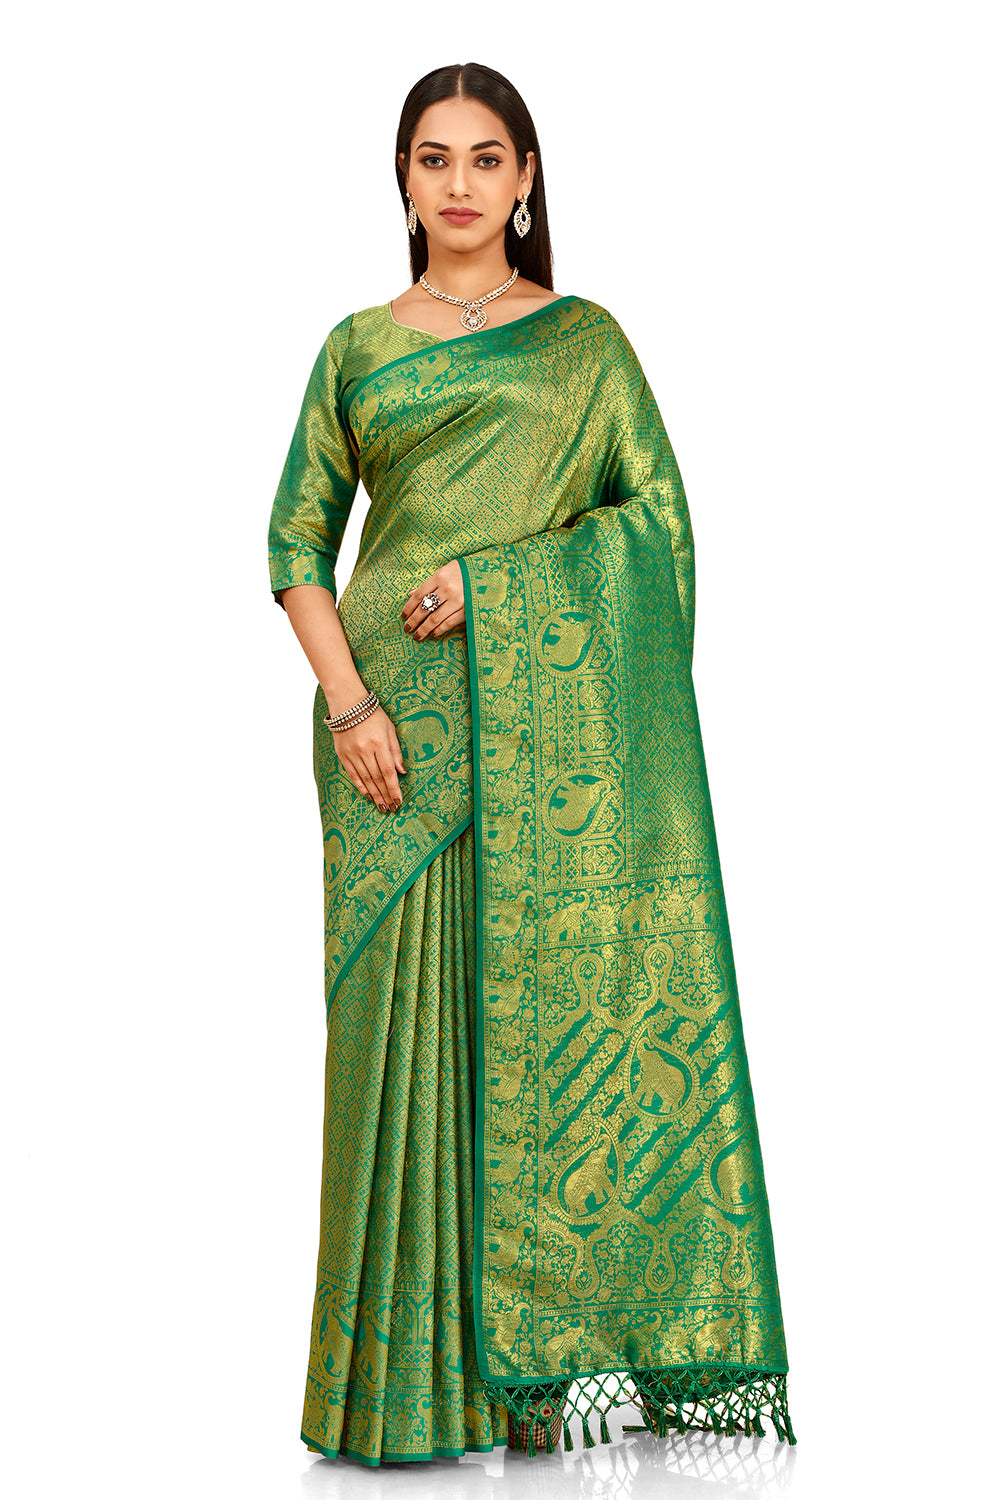 Green color banarasi silk saree buy now